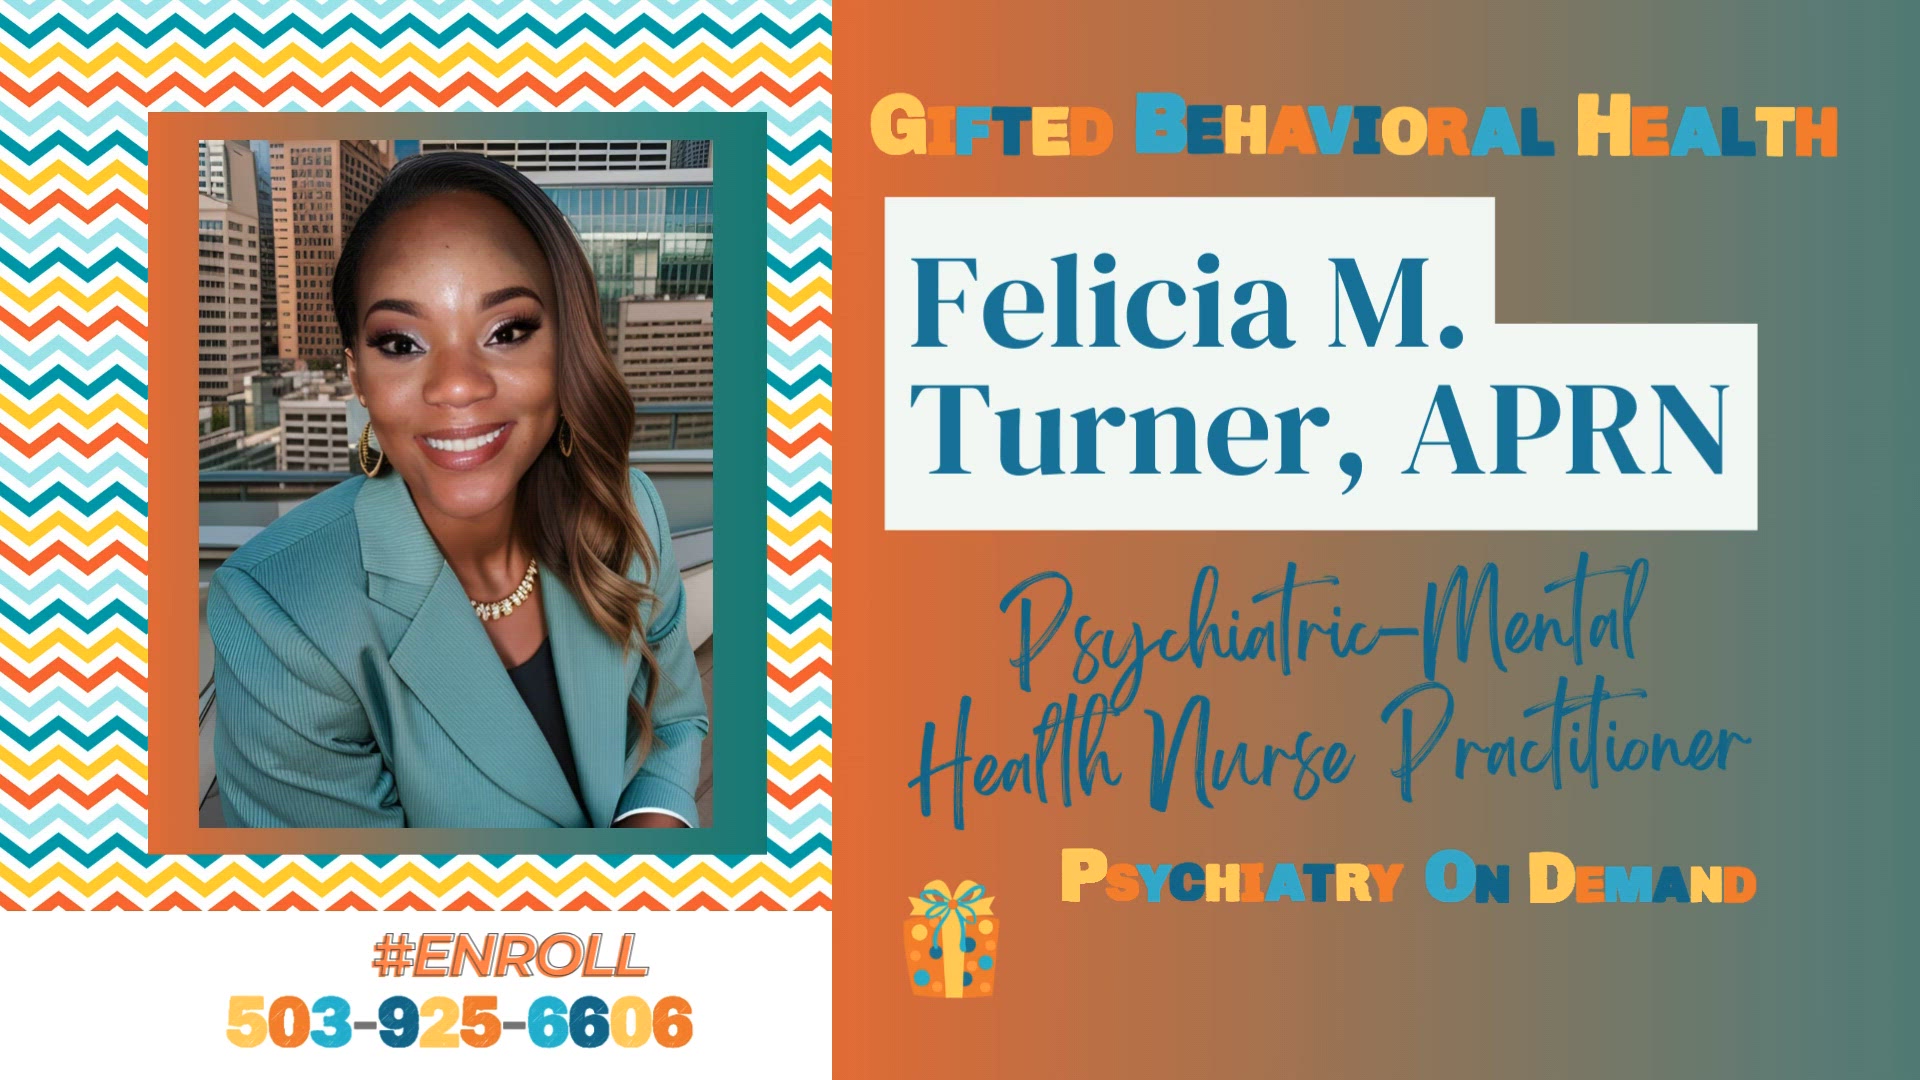 Felicia Turner, APRN | Text #Enroll 503-925-6606